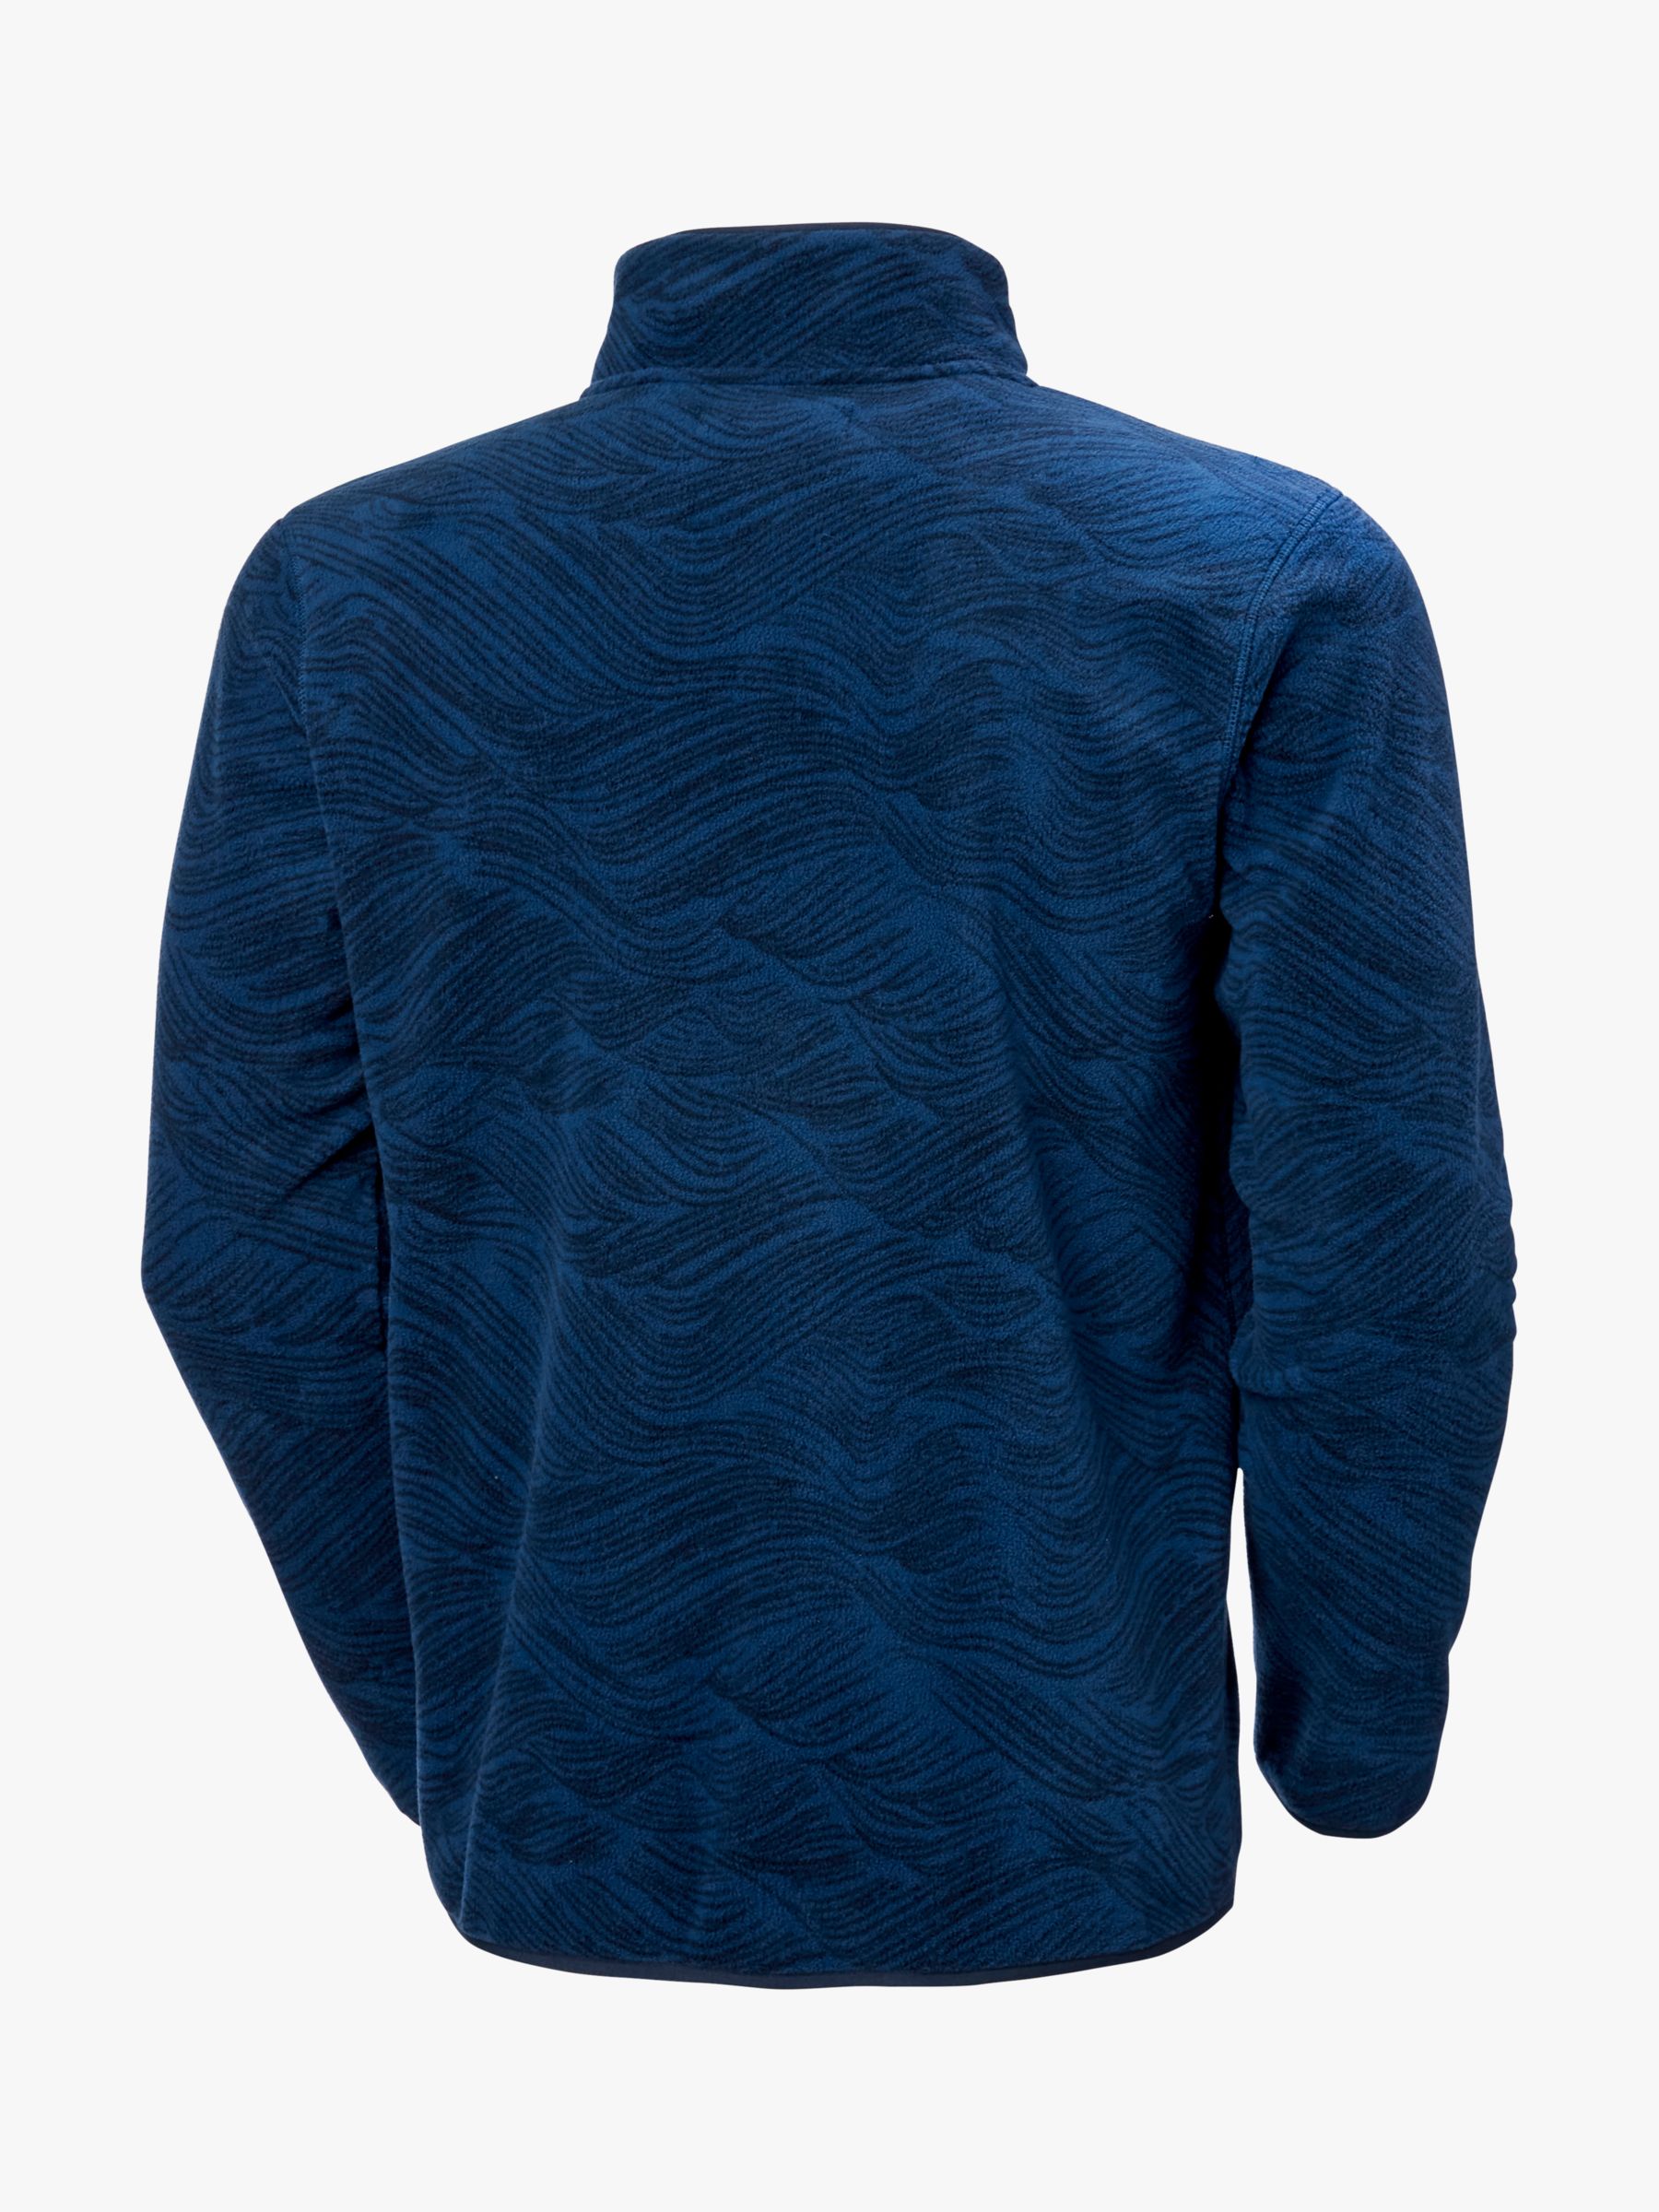 Helly Hansen Men's Marldalen Fleece, Ocean Wave, XL